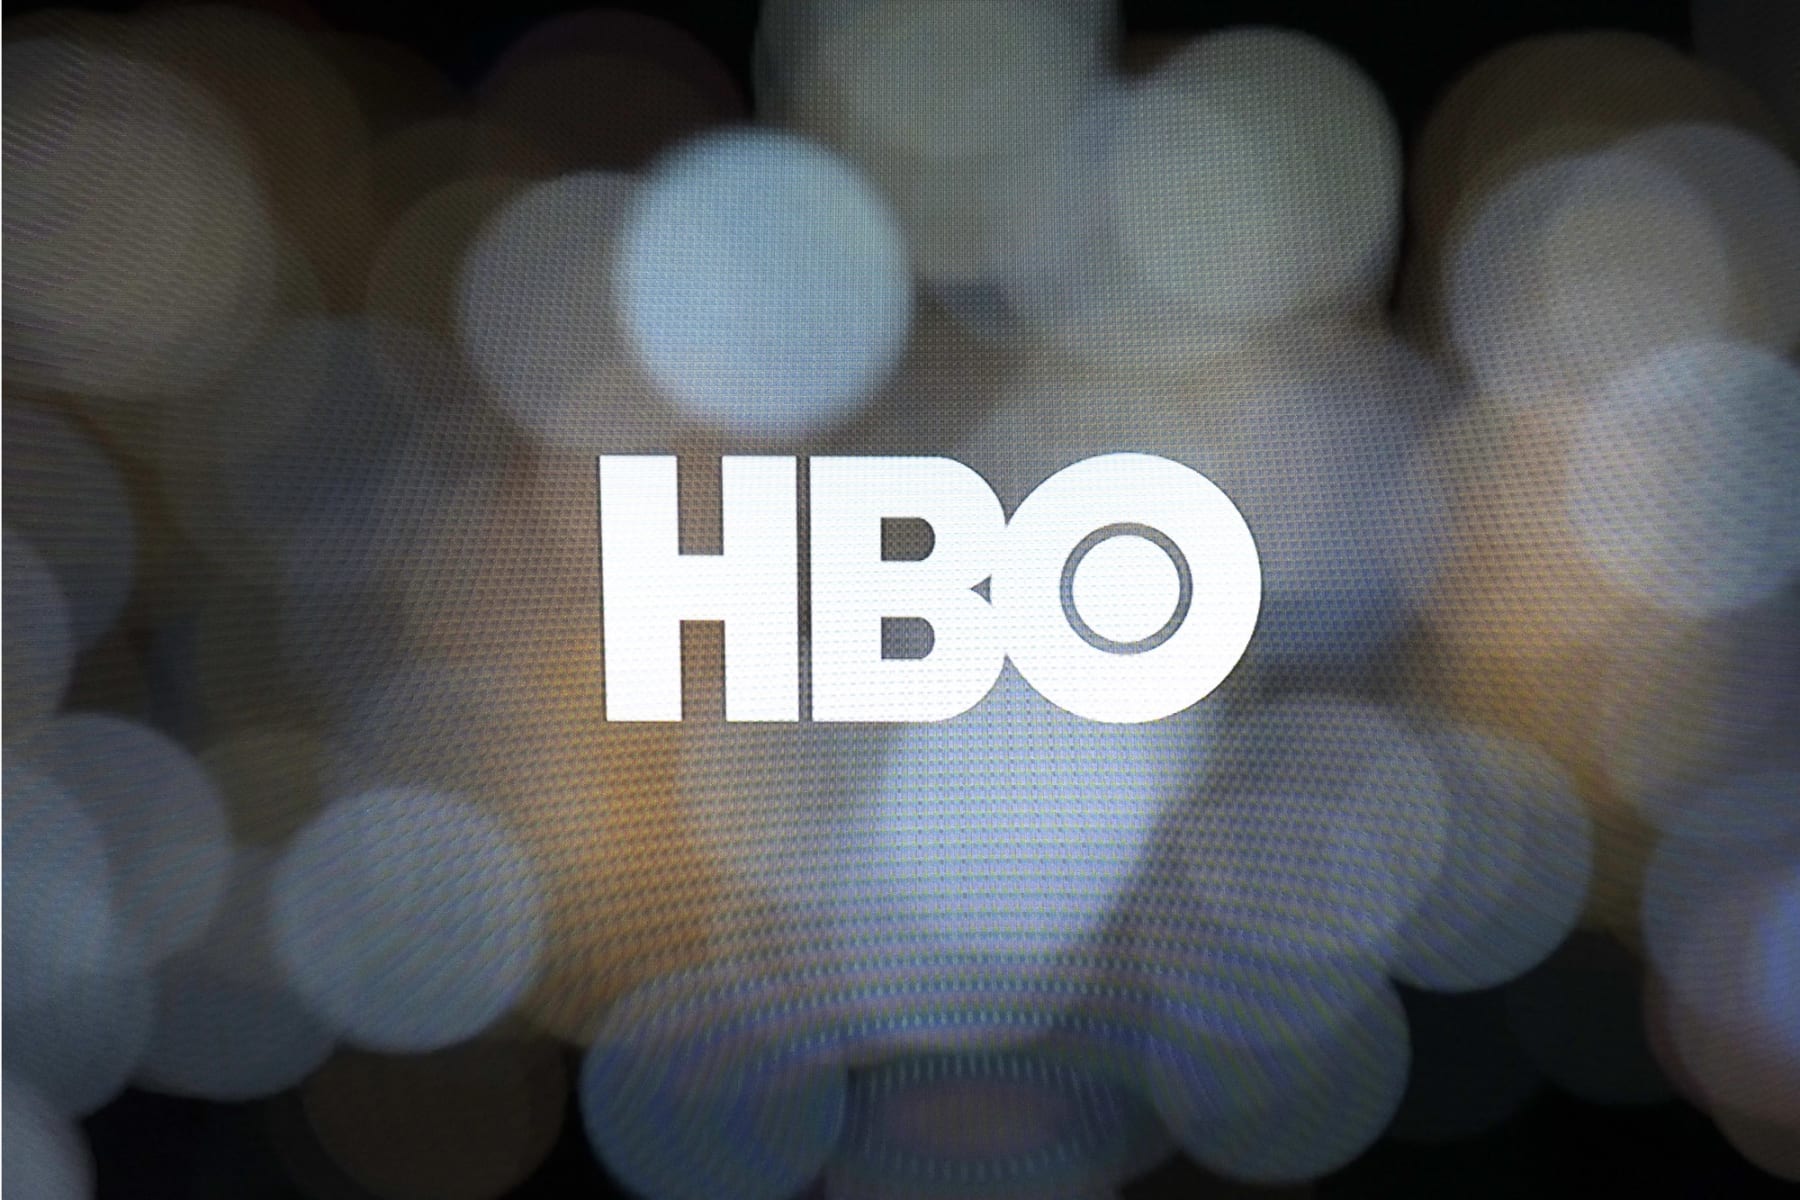 HBO logo is seen on screen.